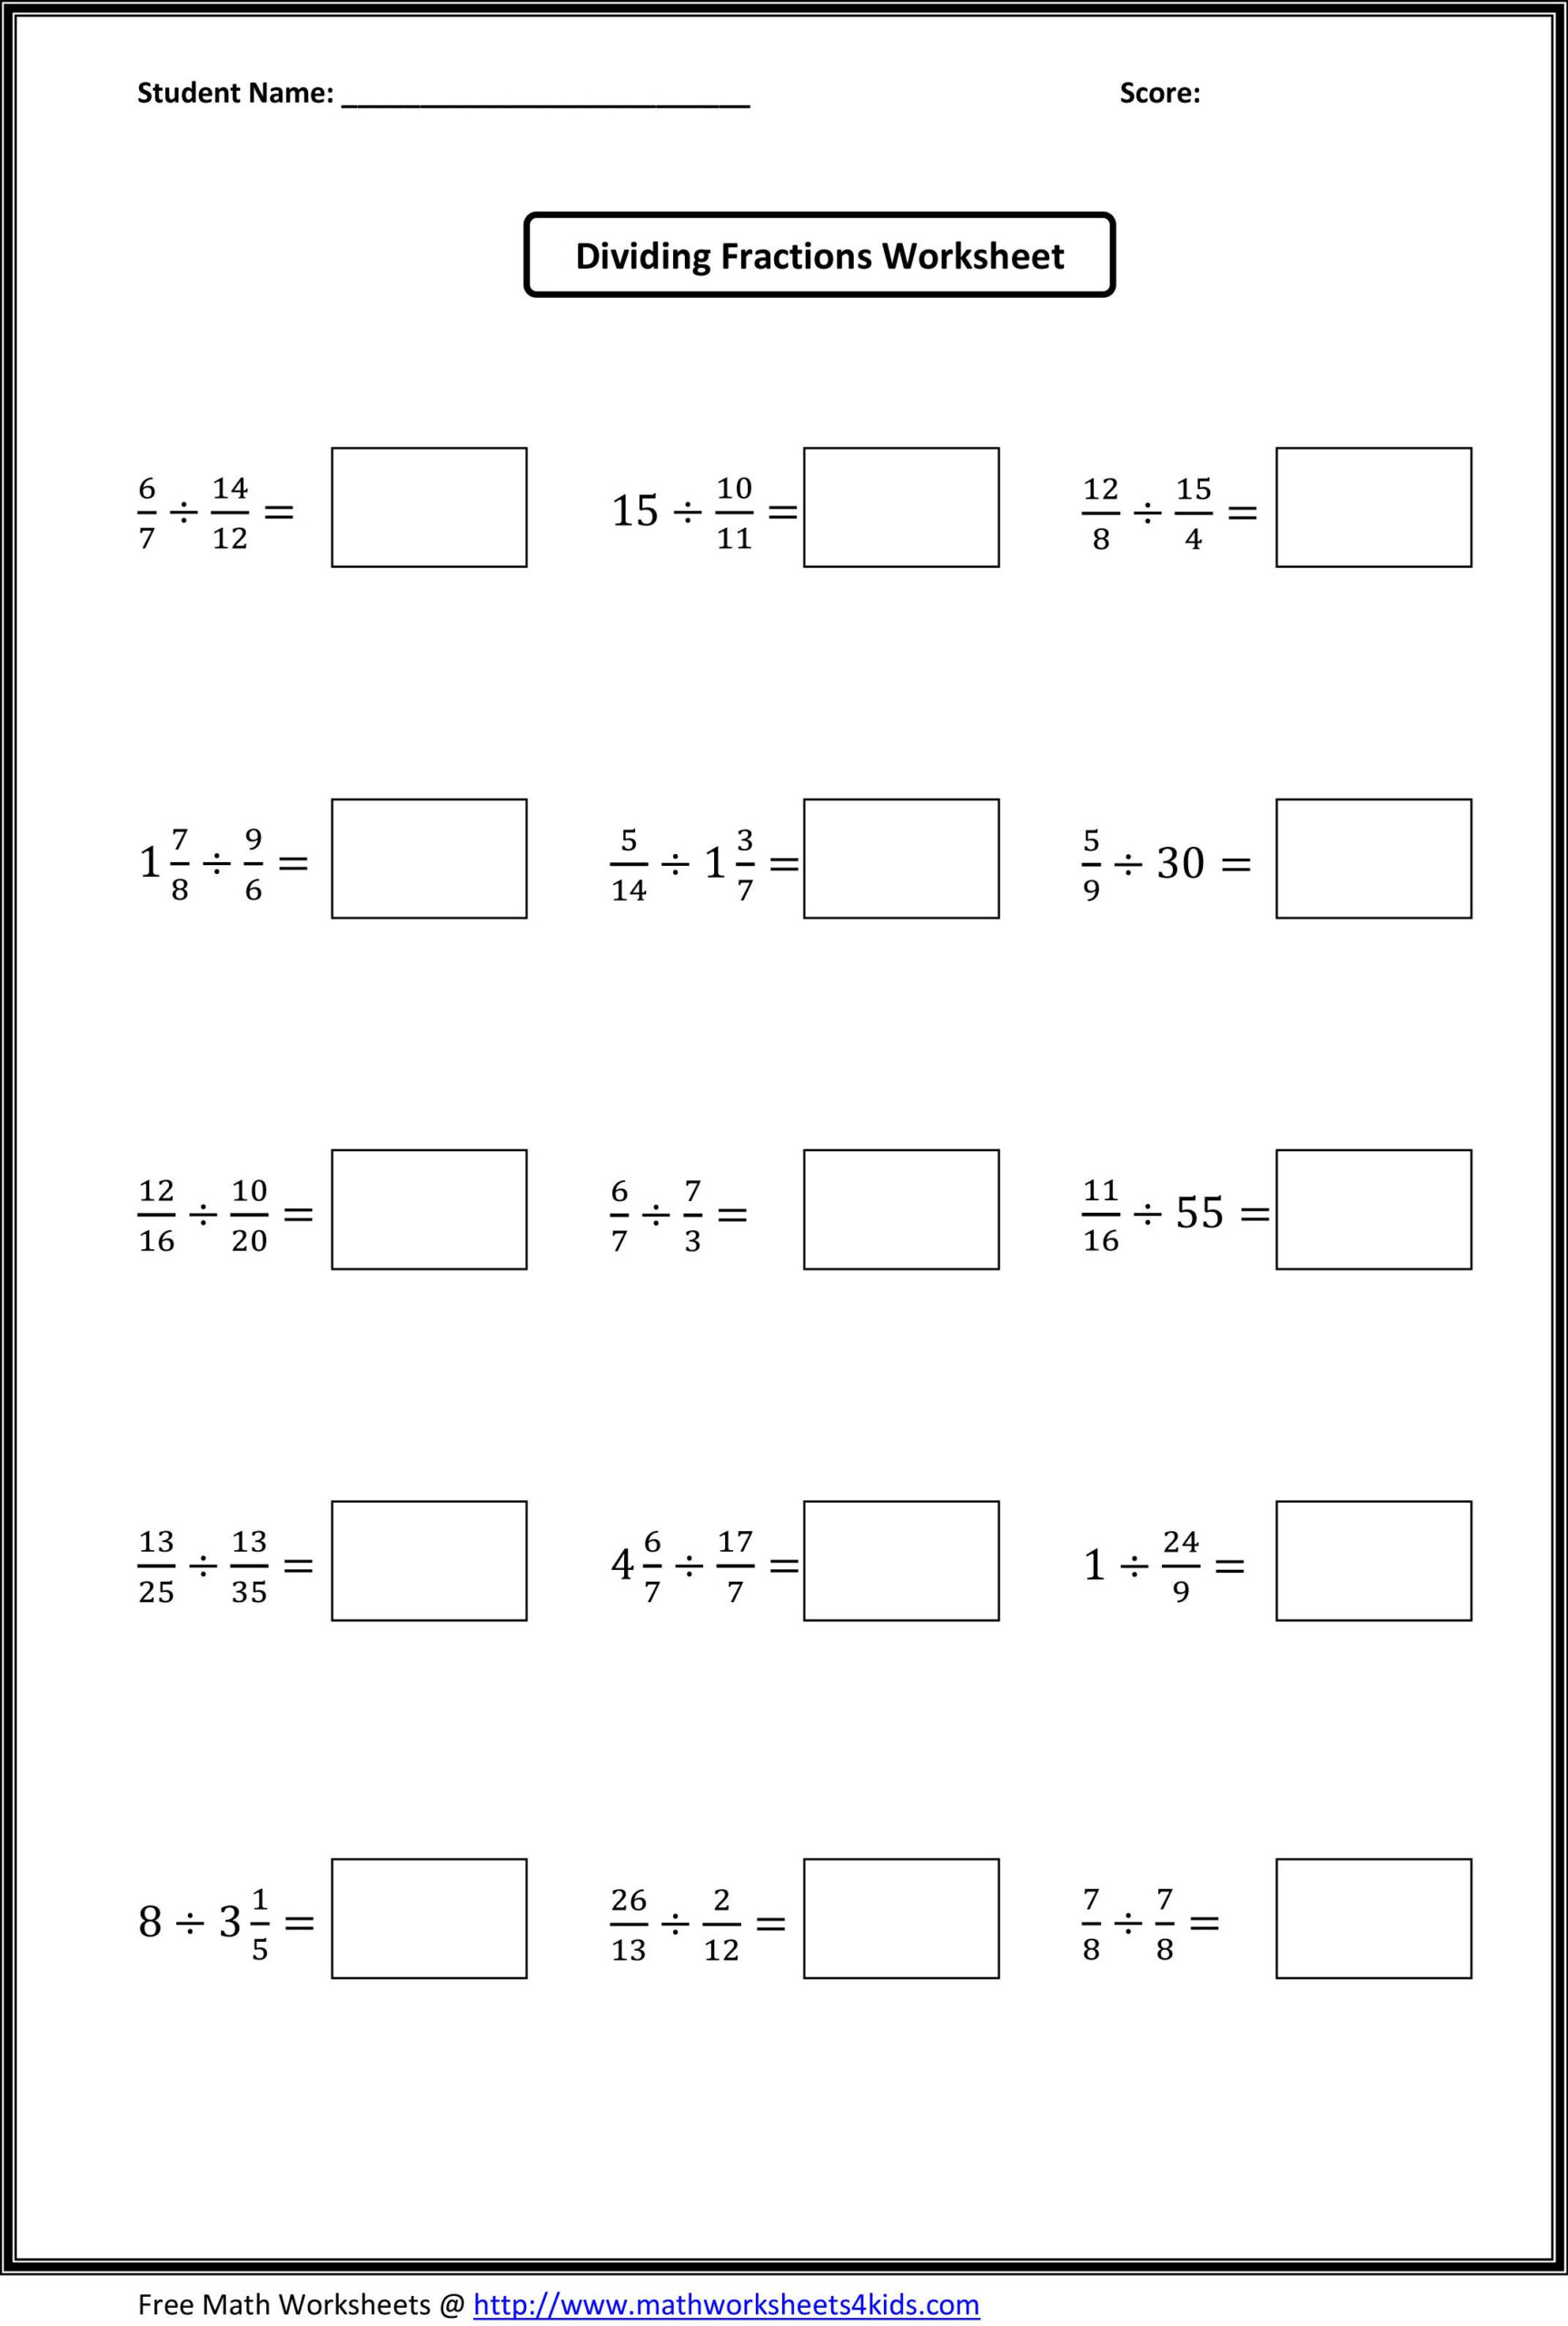 Dividing Fractions Worksheets Dividing Fractions Worksheets 